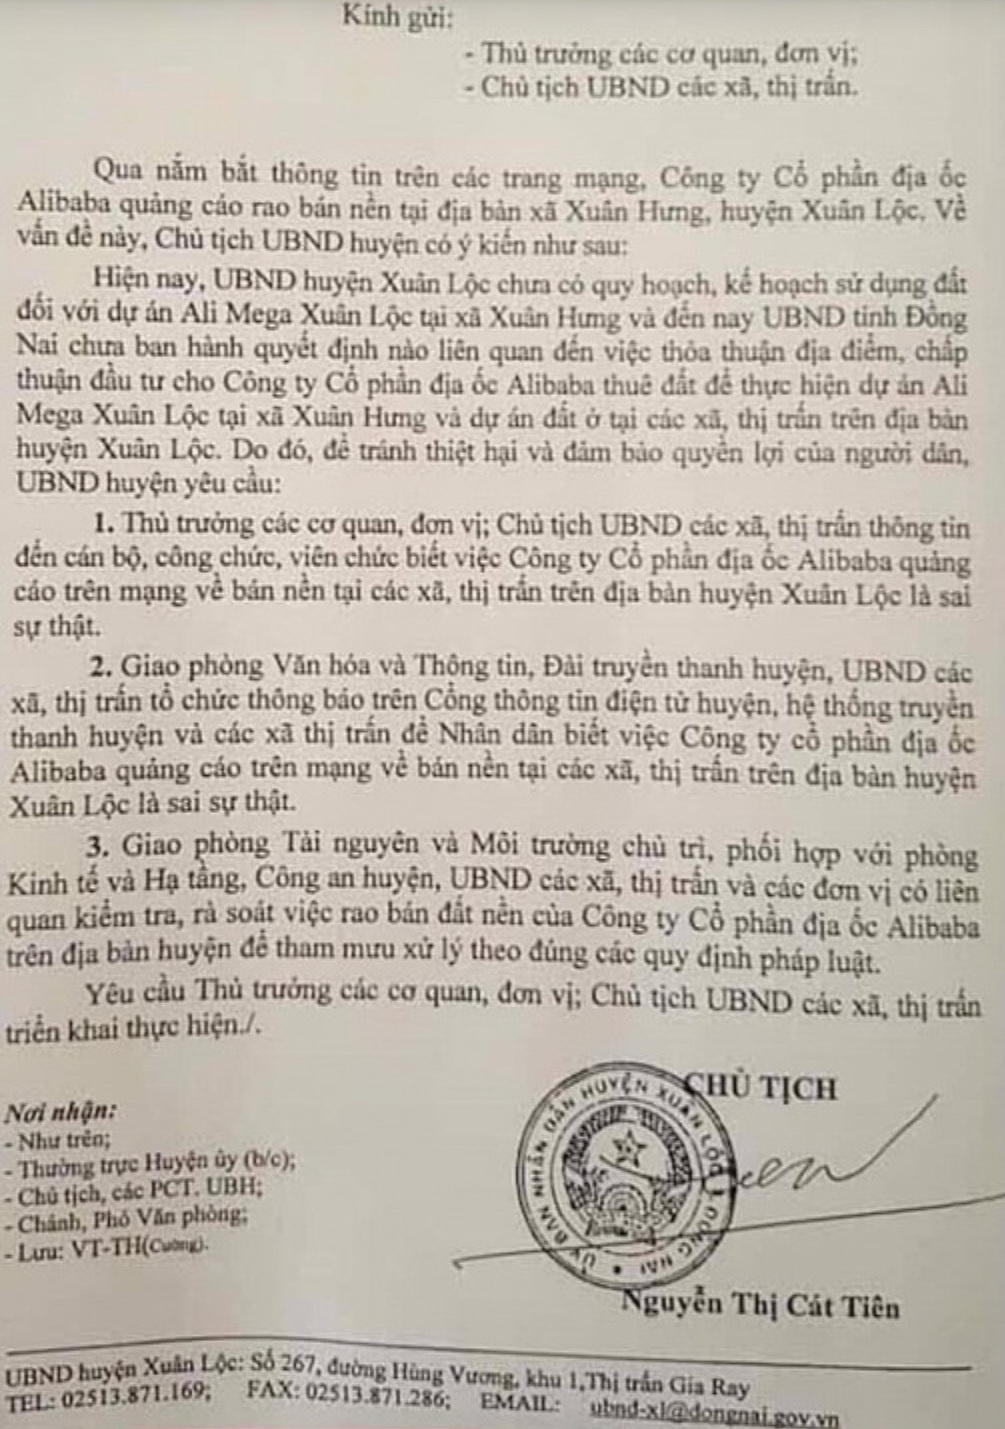 Văn bản của UBND huyện Xuân Lộc gửi thủ trưởng các cơ quan, đơn vị; Chủ tịch UBND các xã, thị trấn về việc Alibaba bán dự án 